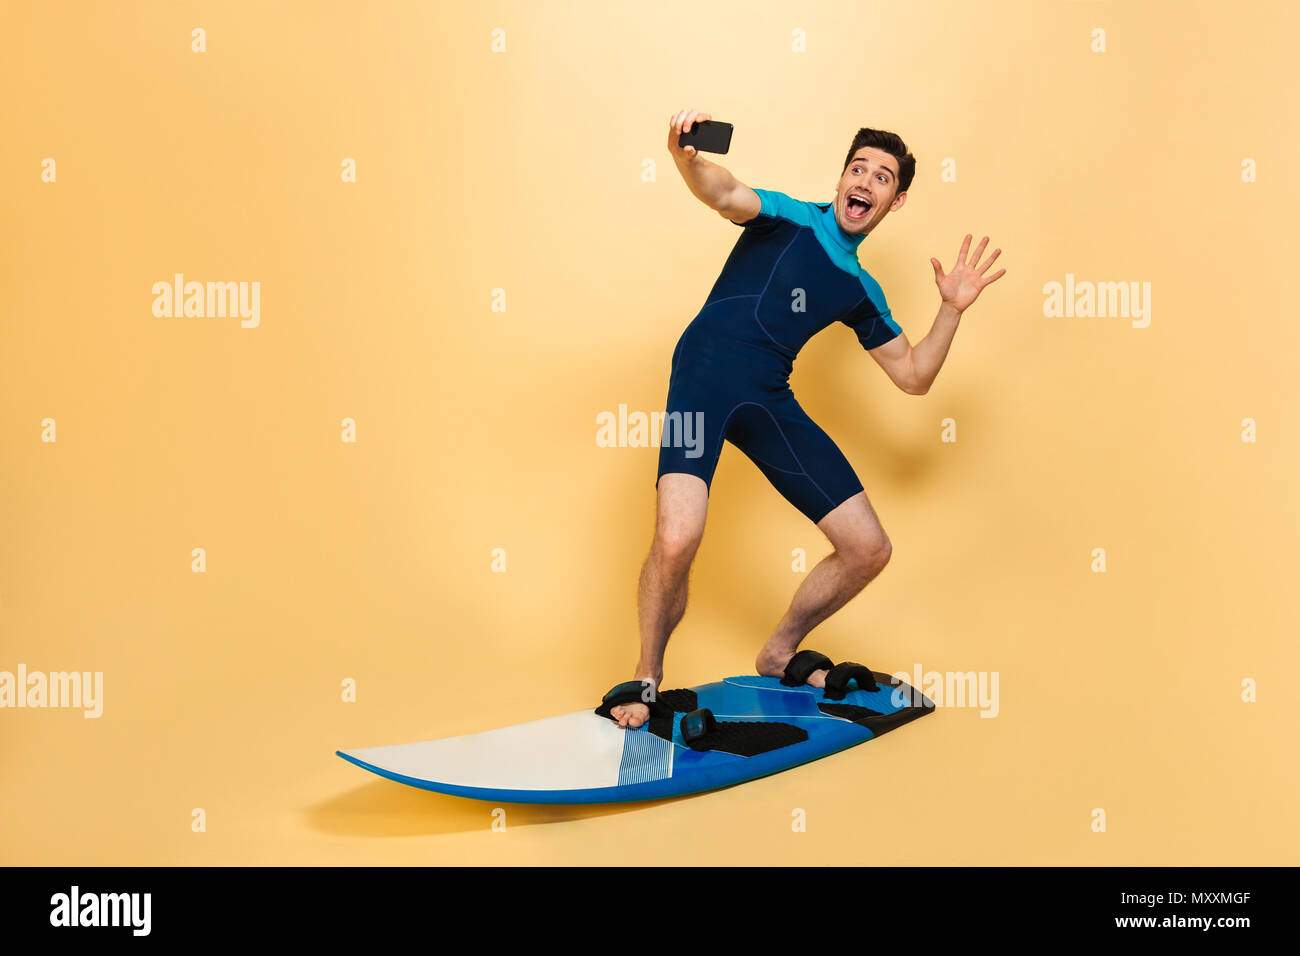 In voller Länge Porträt von einem Aufgeregten jungen Mann im Badeanzug ein selfie gekleidet beim Surfen auf einem Brett über Gelb Hintergrund isoliert Stockfoto